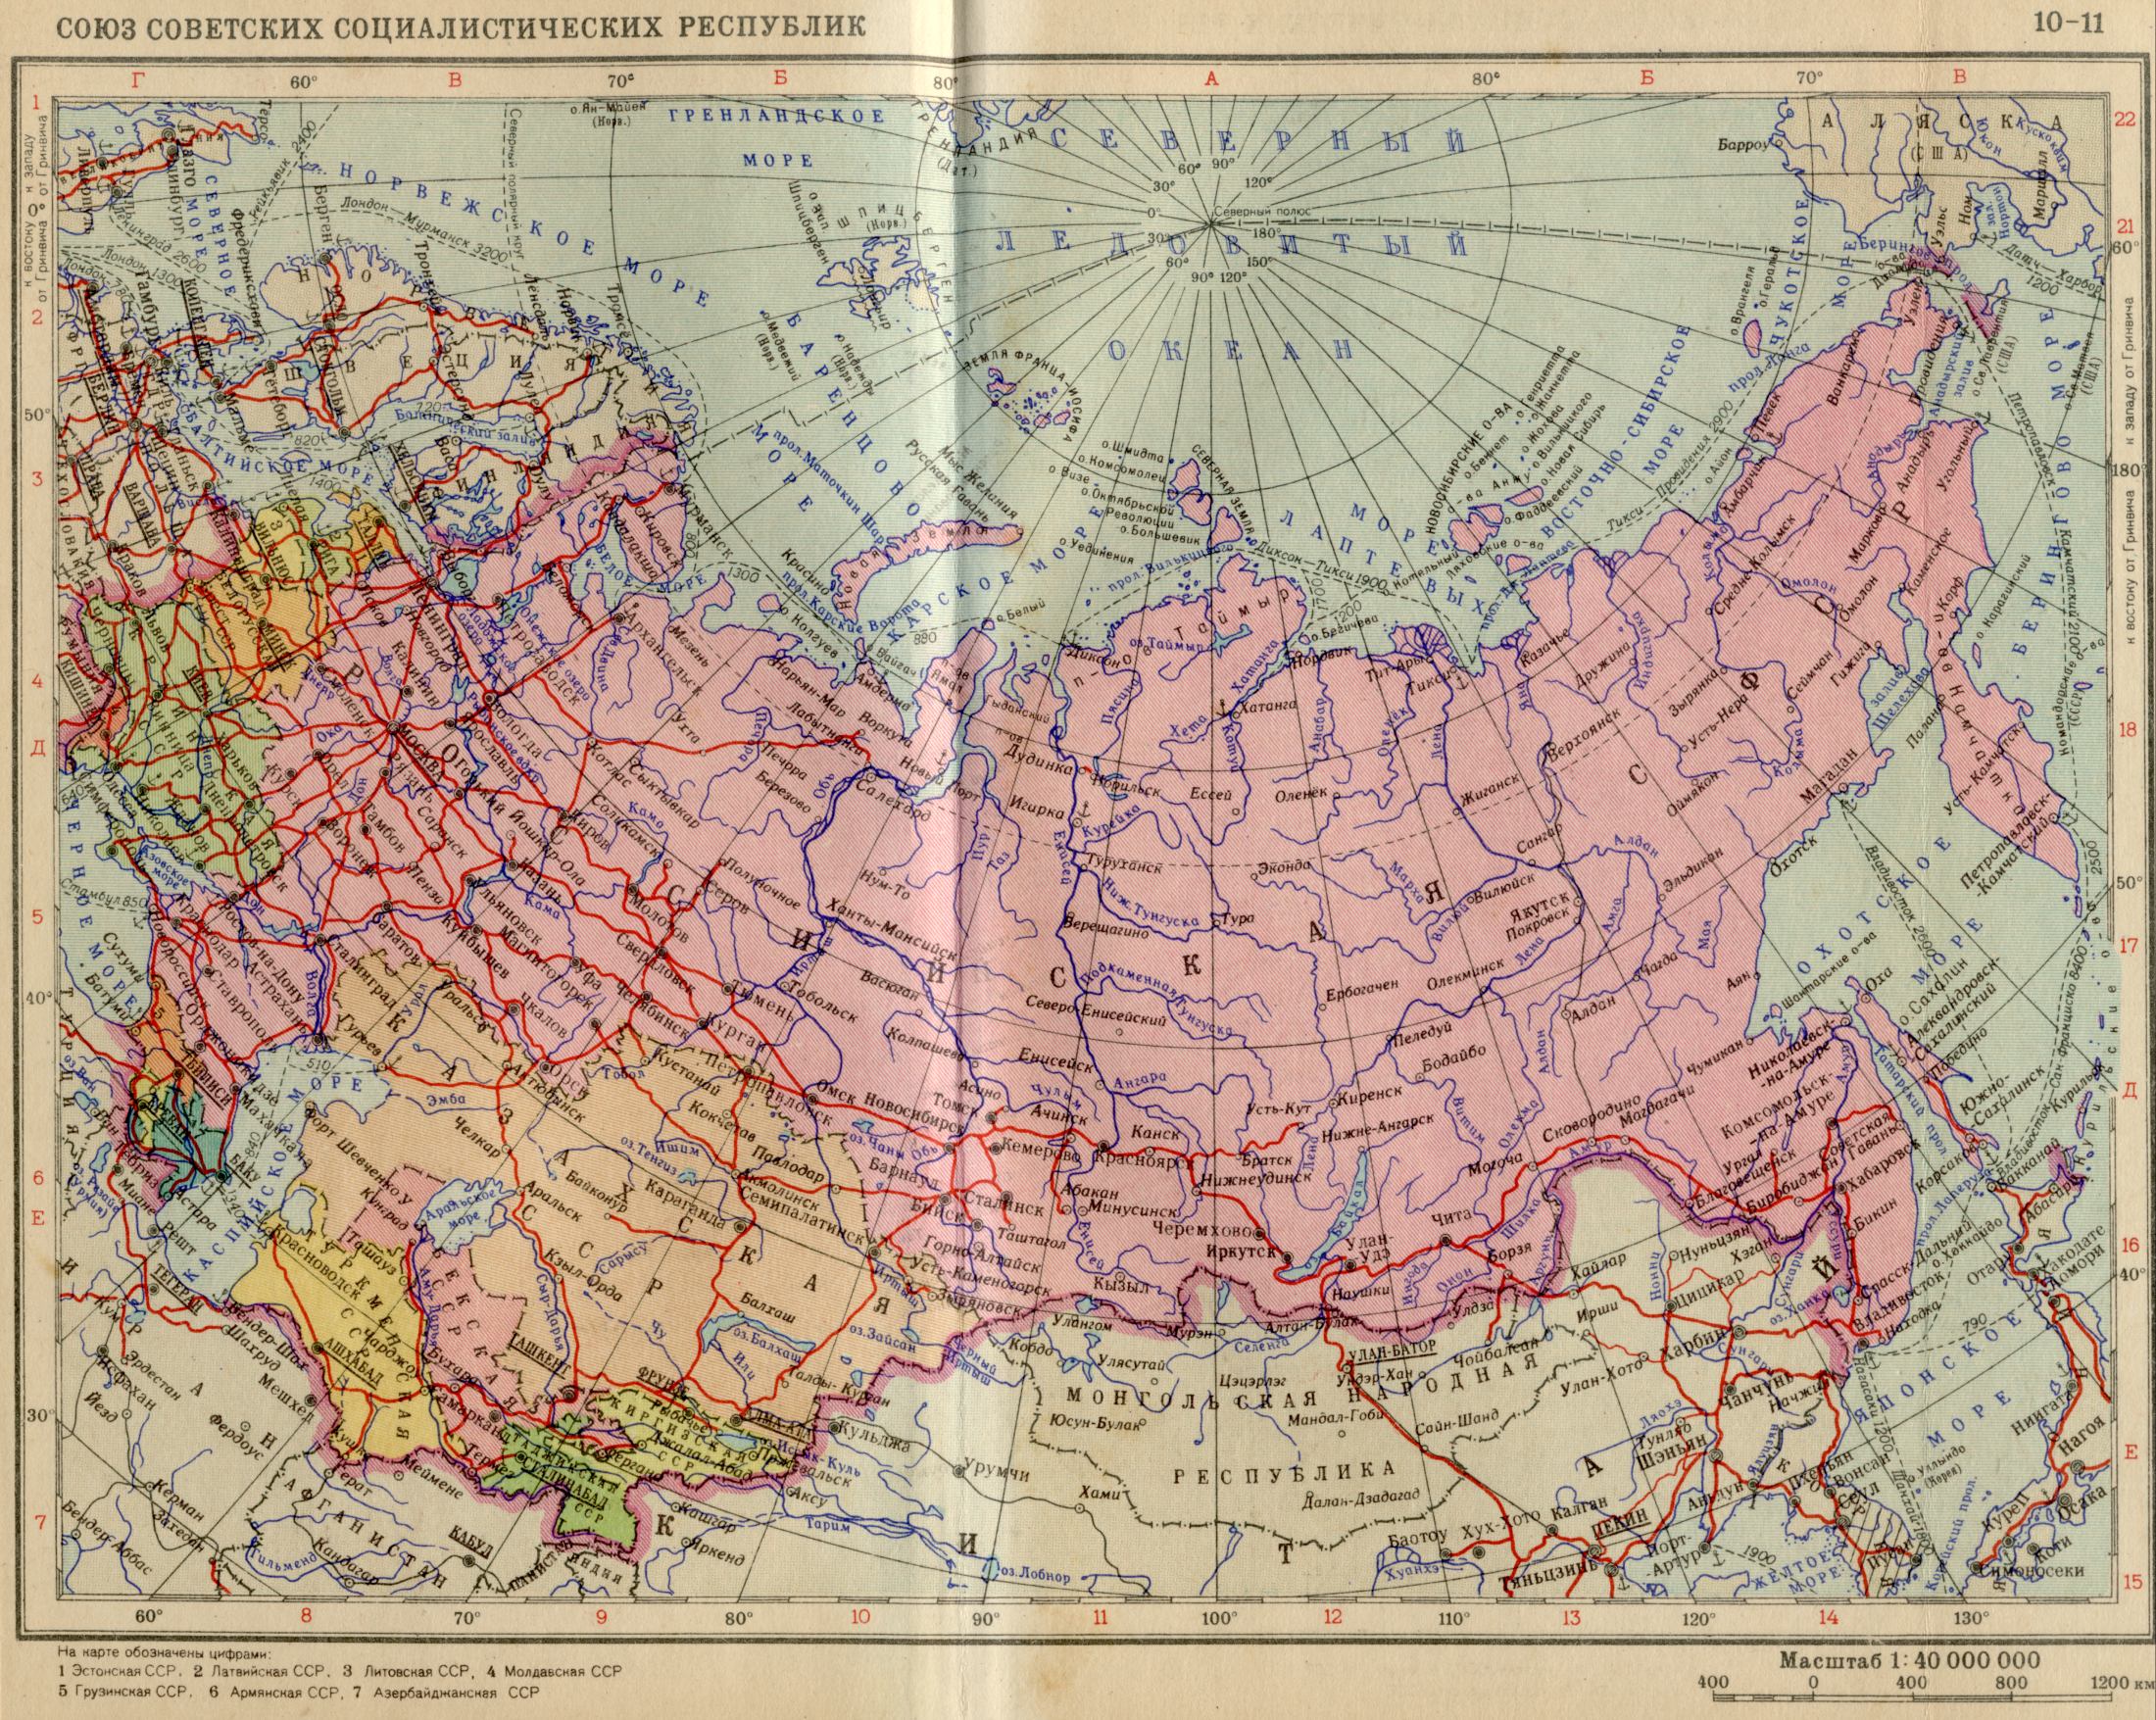 1956. La carte politique du monde - l'URSS 1956. Télécharger une carte détaillée de l'Union des Républiques socialistes soviétiques